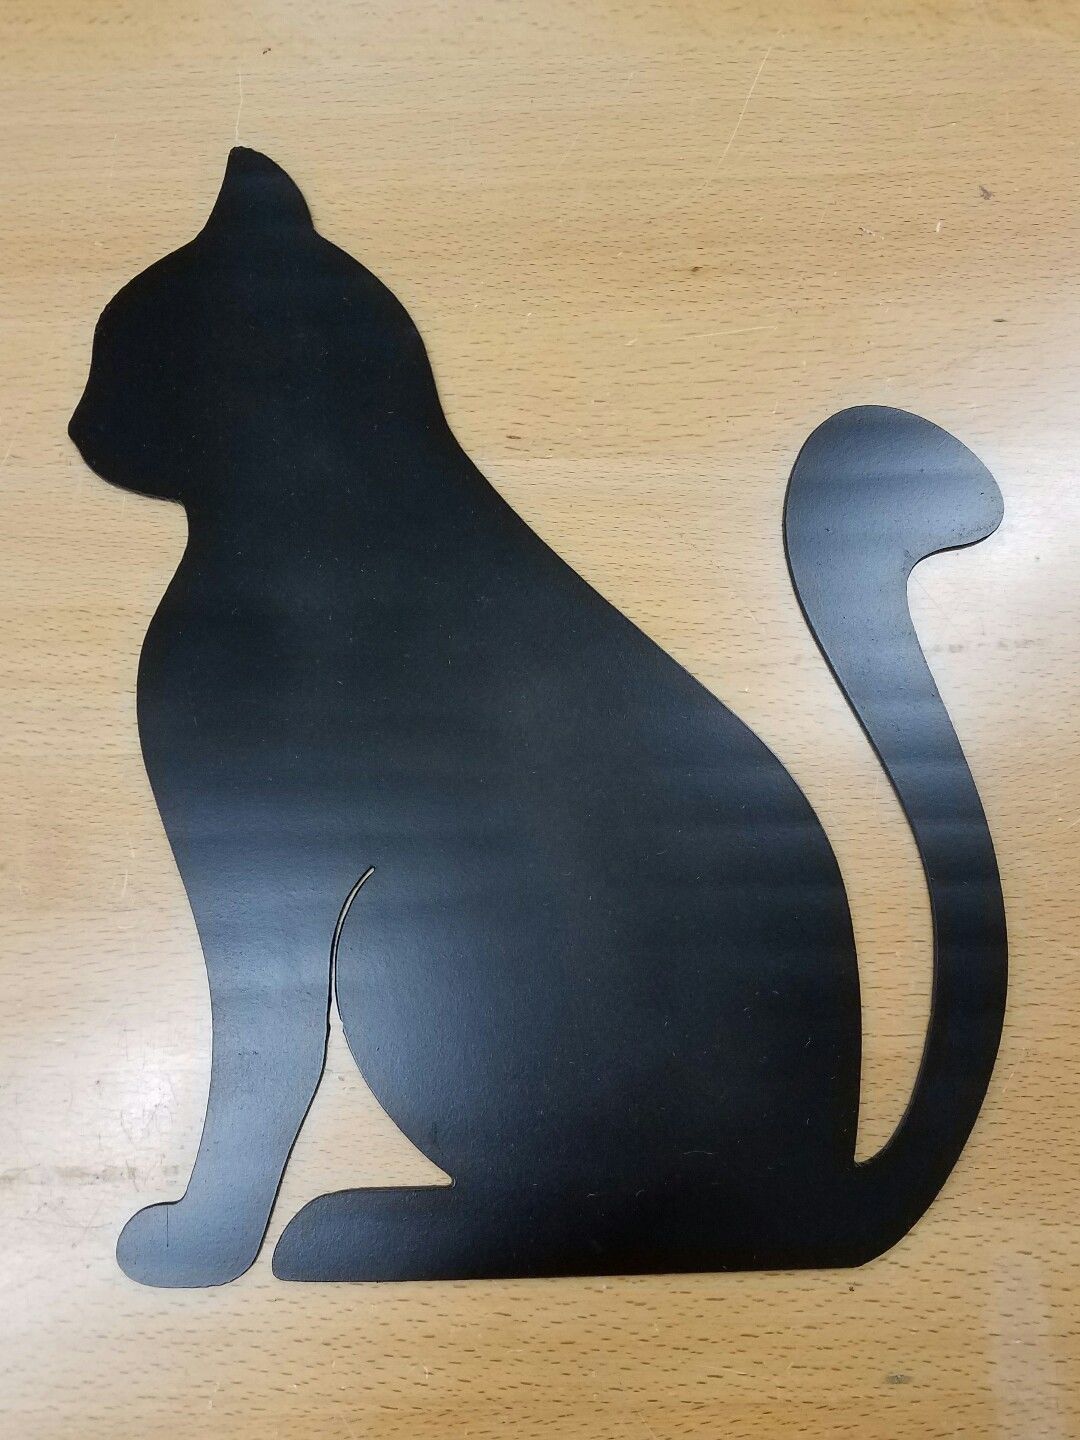 Black Cat Sitting Metal Wall Art Plasma Cut Decor T Idea Kitty Gas